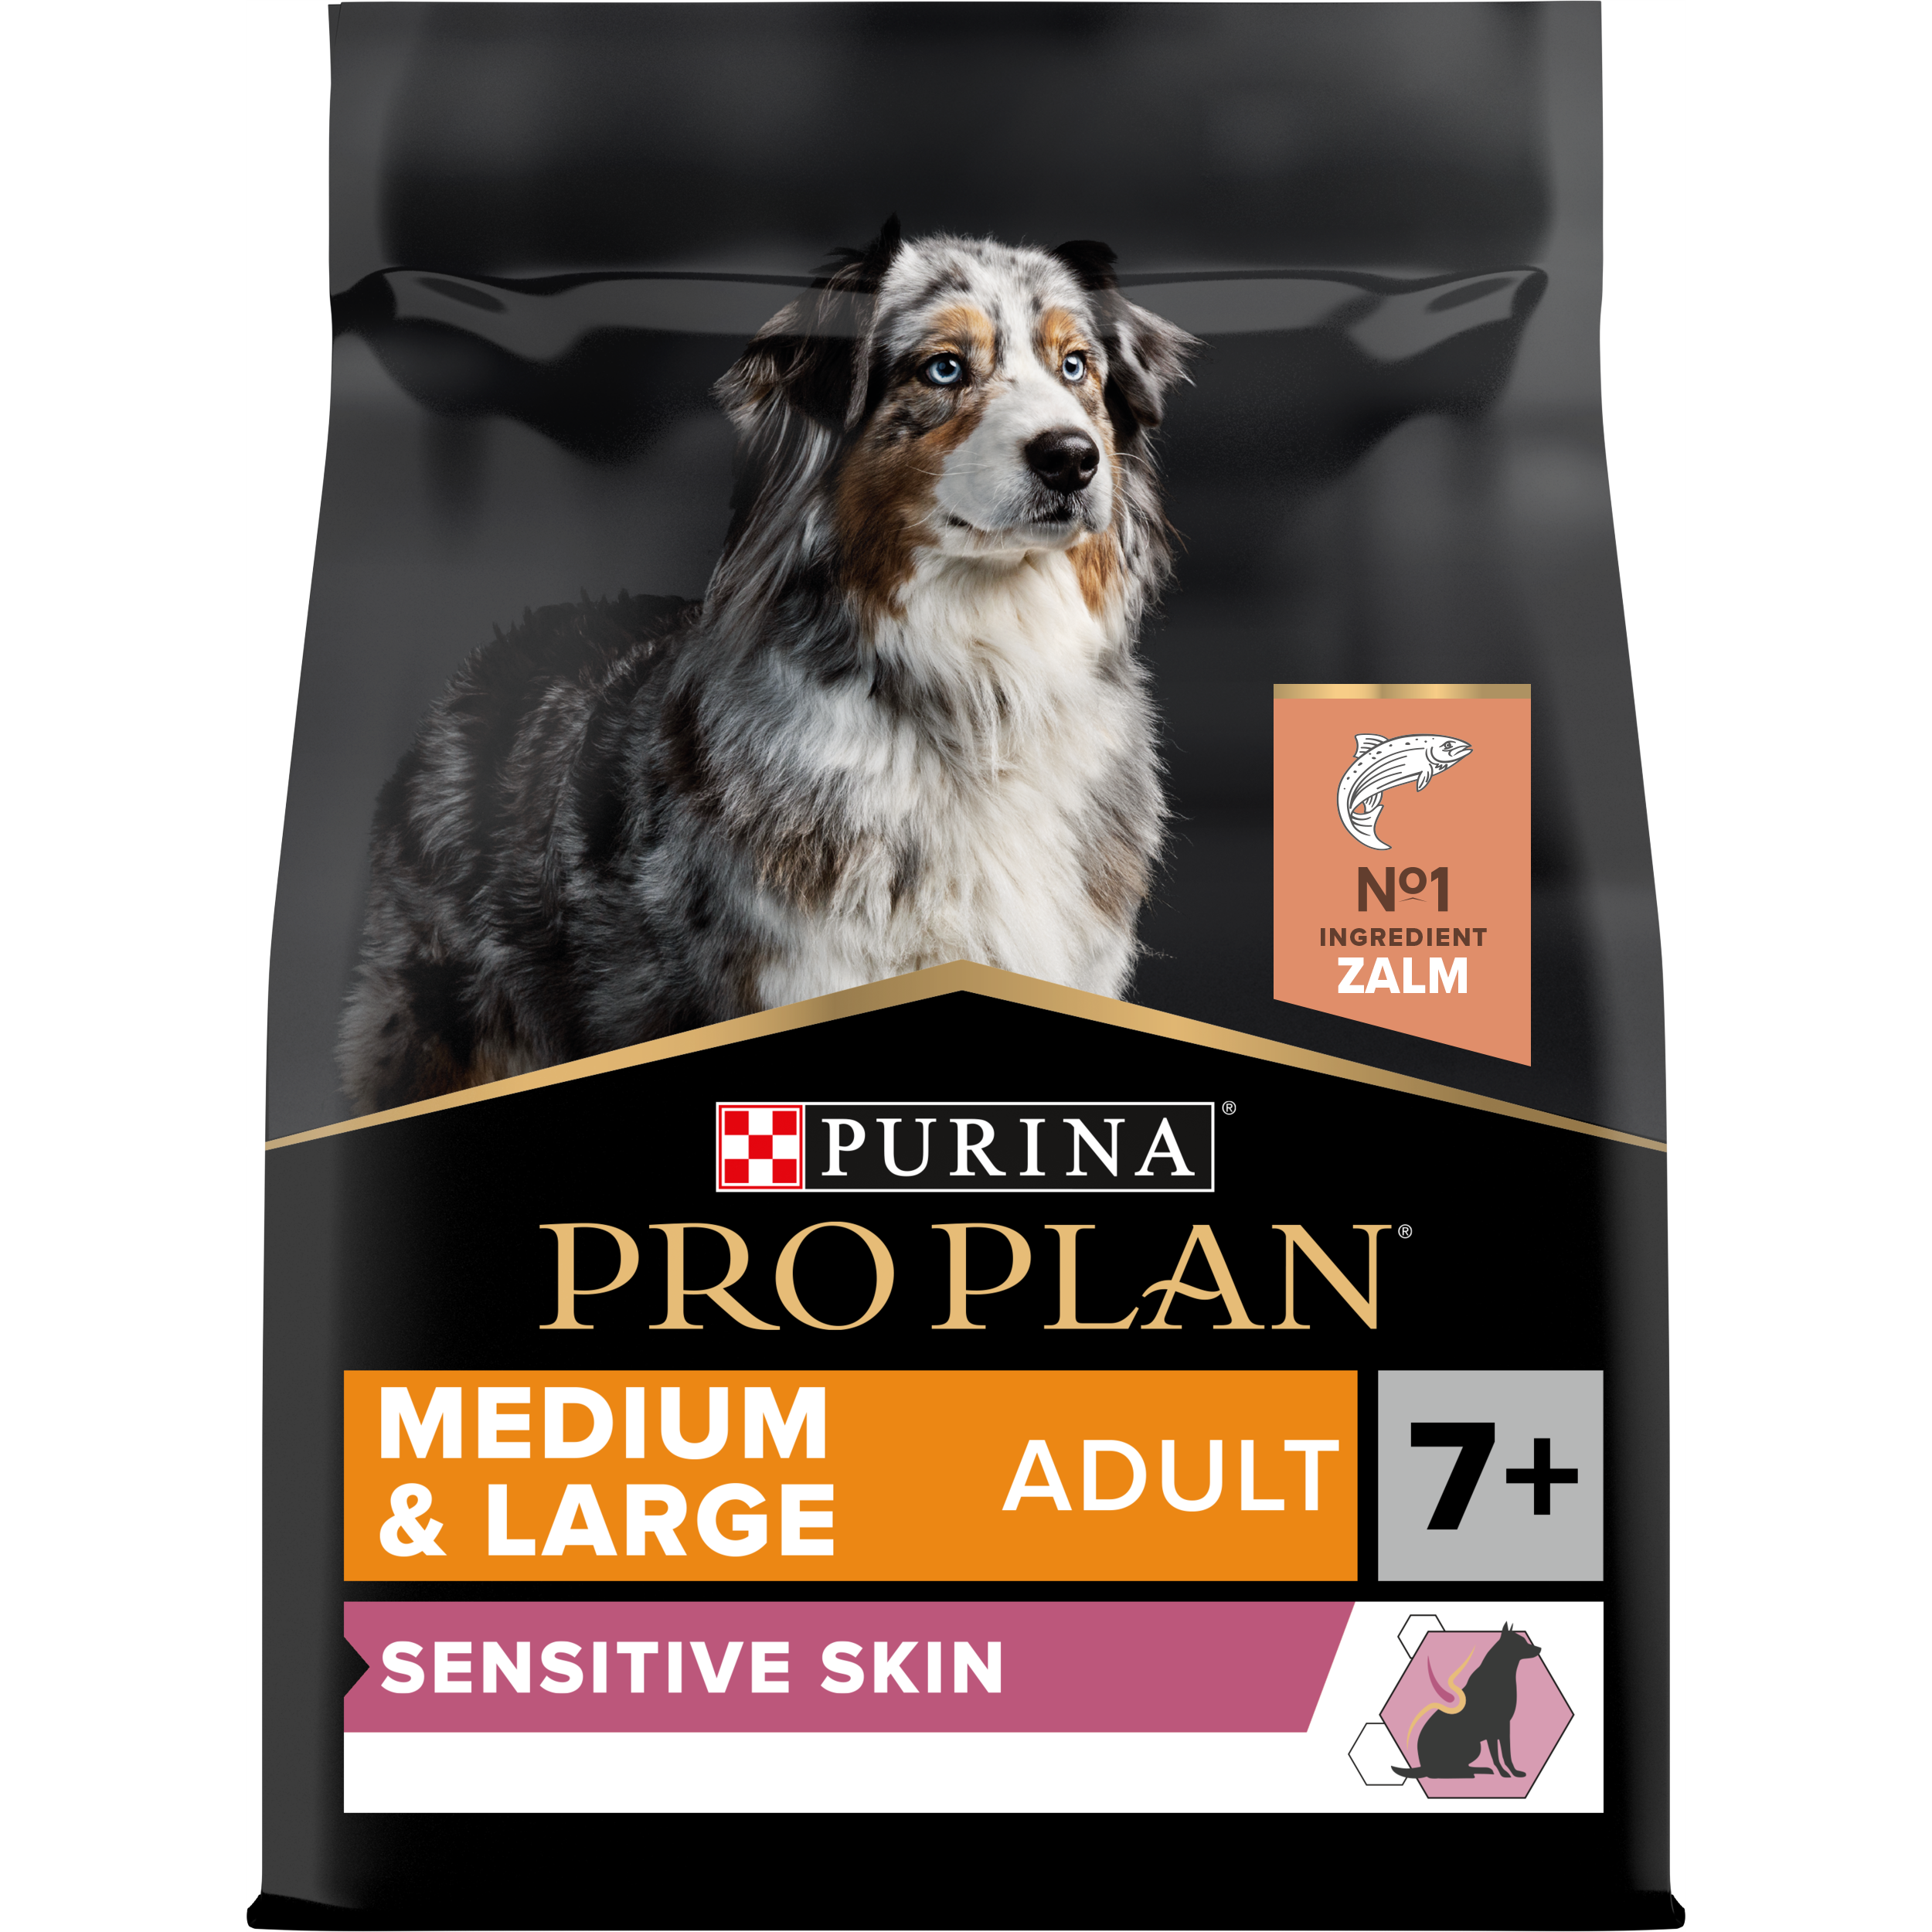 Brig eend lijn PRO PLAN® Sensitive Skin M&L Adult 7+ hondenvoer | Purina